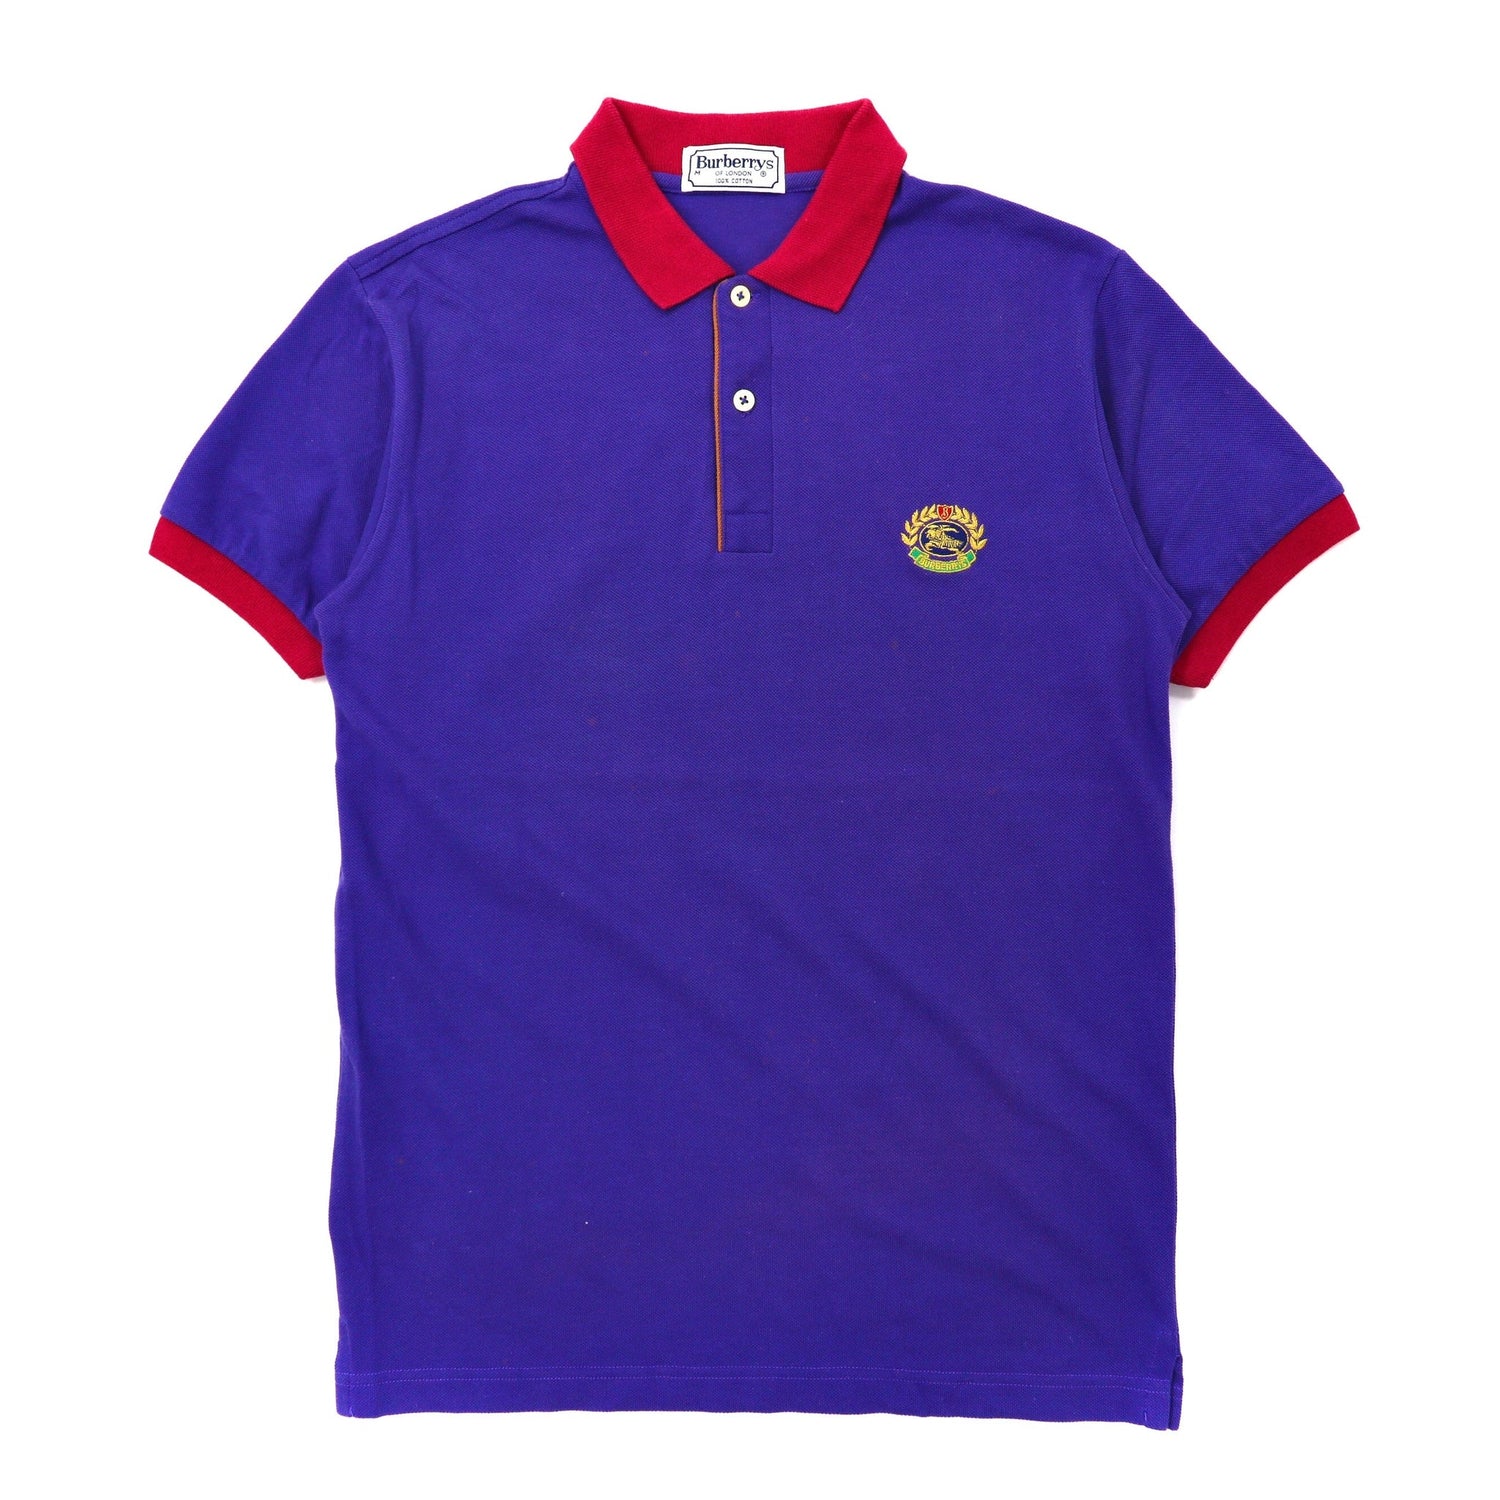 BURBERRYS Polo Shirt M Blue Cotton Emblem Embroider